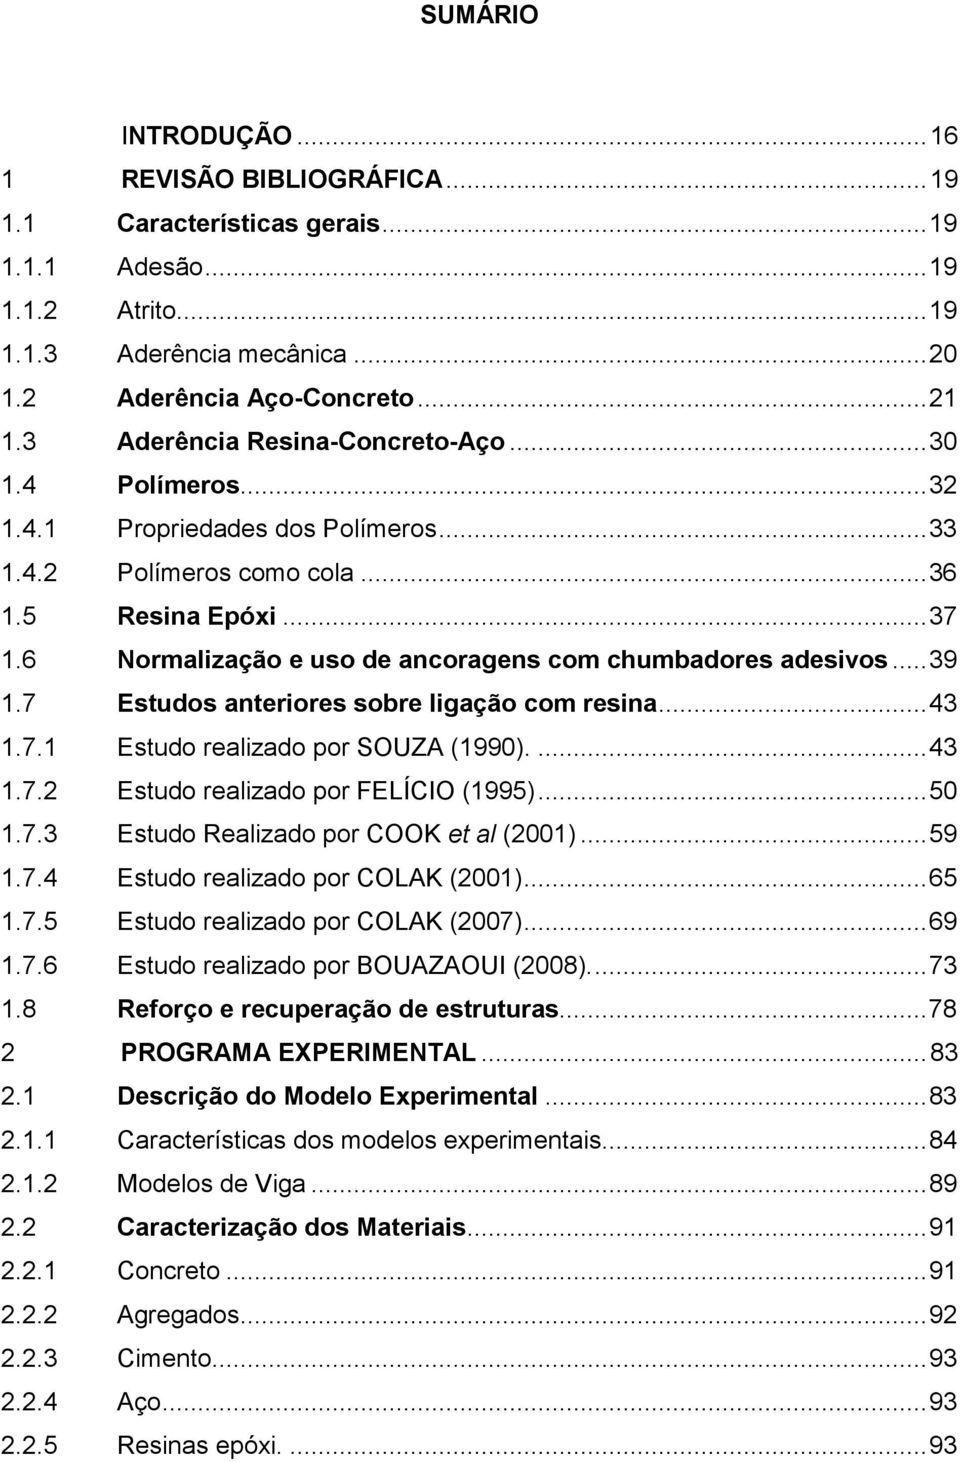 6 Normalização e uso de ancoragens com chumbadores adesivos...39 1.7 Estudos anteriores sobre ligação com resina...43 1.7.1 Estudo realizado por SOUZA (1990)....43 1.7.2 Estudo realizado por FELÍCIO (1995).